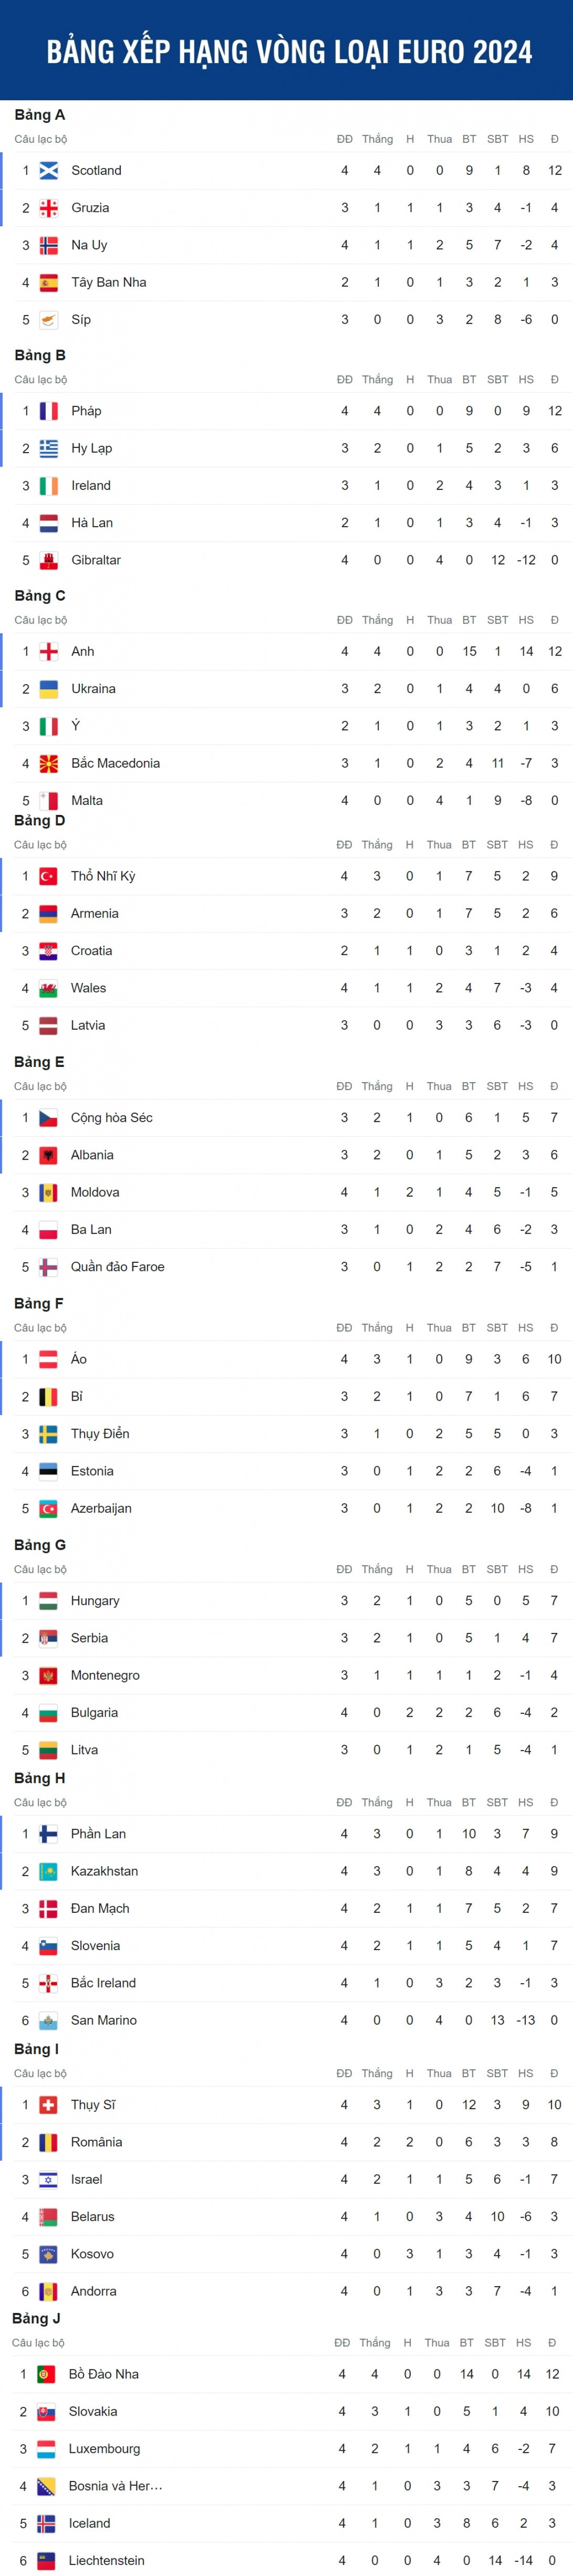 Bảng xếp hạng vòng loại EURO 2024 Anh và Bồ Đào Nha áp đảo, bất ngờ từ